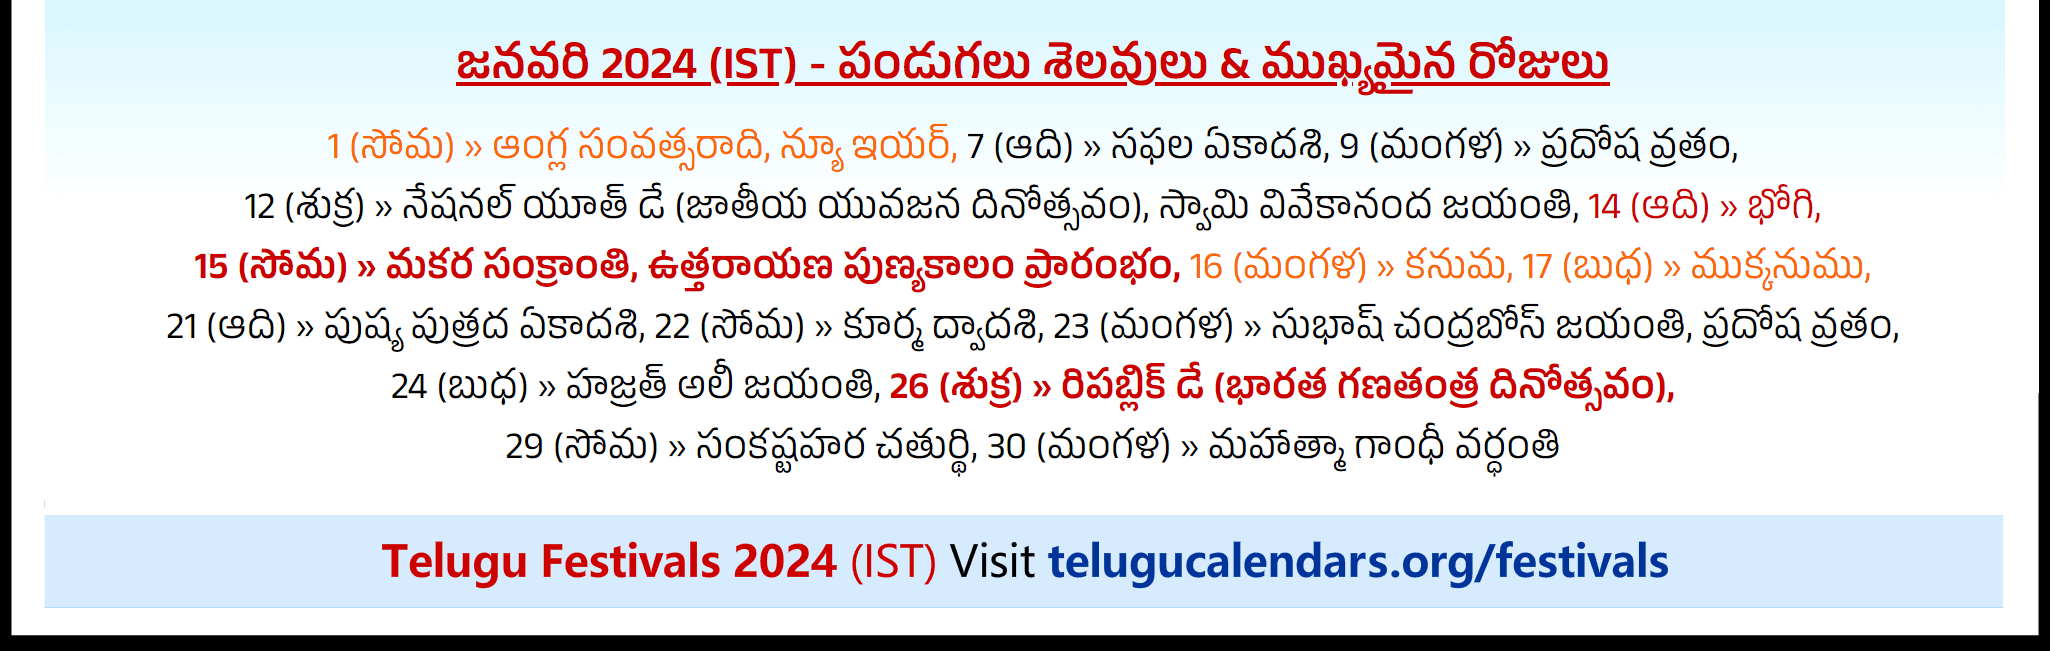 Telugu Festivals 2024 January Sydney